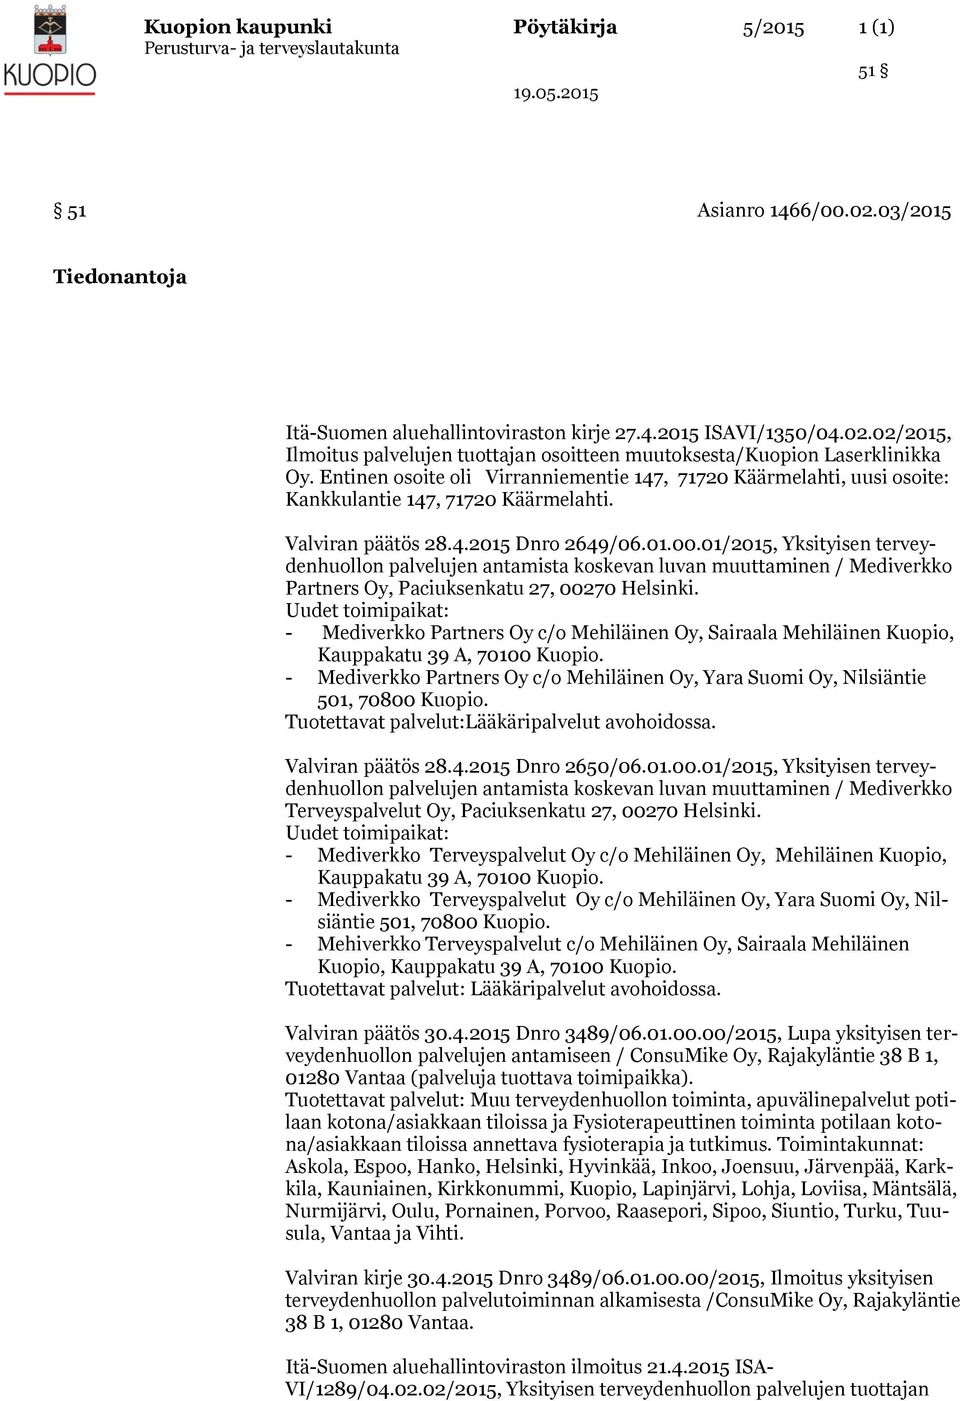 01/2015, Yksityisen terveydenhuollon palvelujen antamista koskevan luvan muuttaminen / Mediverkko Partners Oy, Paciuksenkatu 27, 00270 Helsinki.